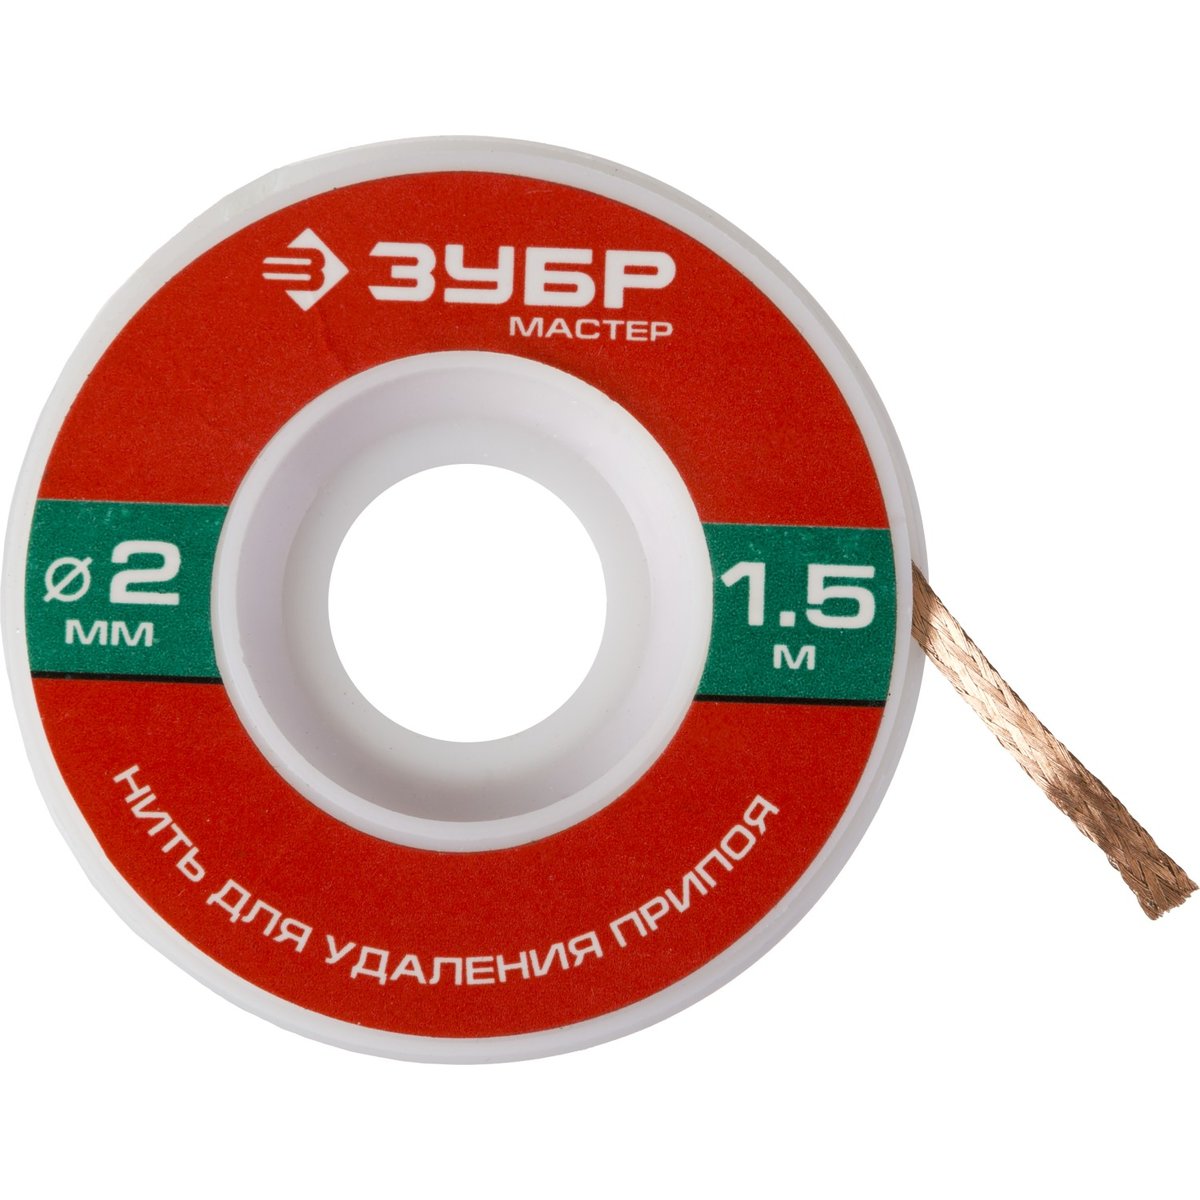 ЗУБР диаметр 2 мм, длина 1.5 м, нить для удаления излишков припоя 55469-2